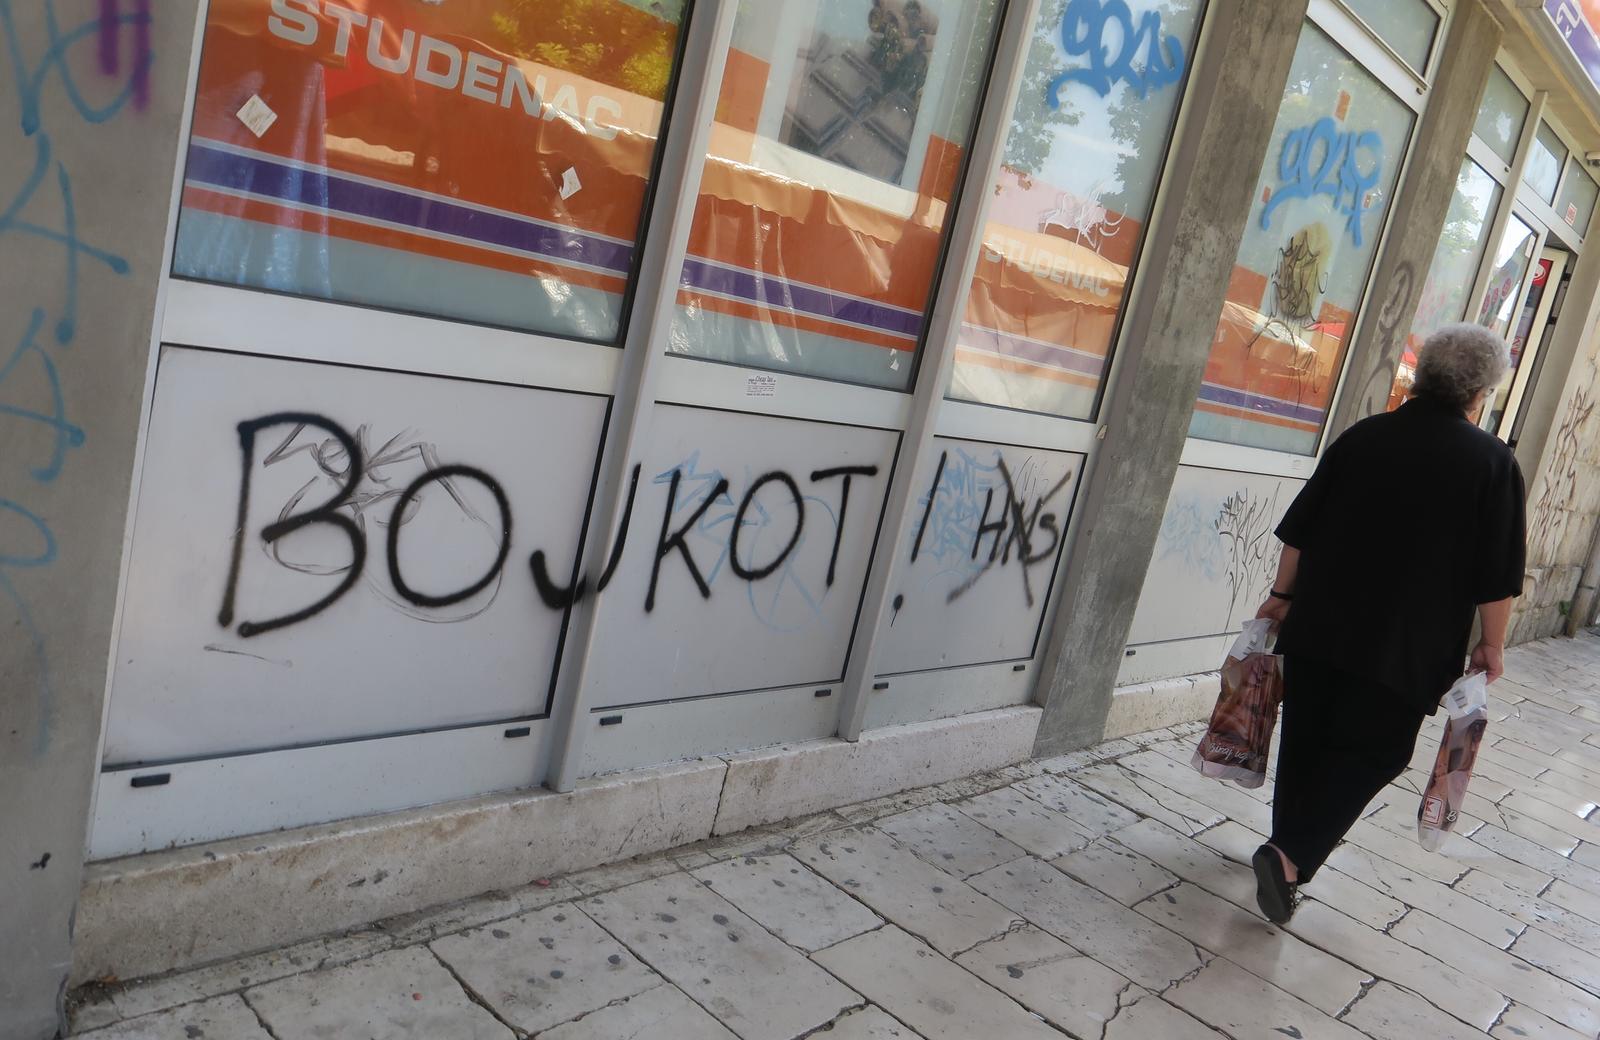 20.06.2018., Split - Zidovi po gradu isarani grafitima kojima neznani autor zeli "smrt pandurima i pederima" te porucuje kako "mrzi repku, A.C.A.B." i poziva na "bojkot HNS-a". 

Photo: Ivo Cagalj/PIXSELL